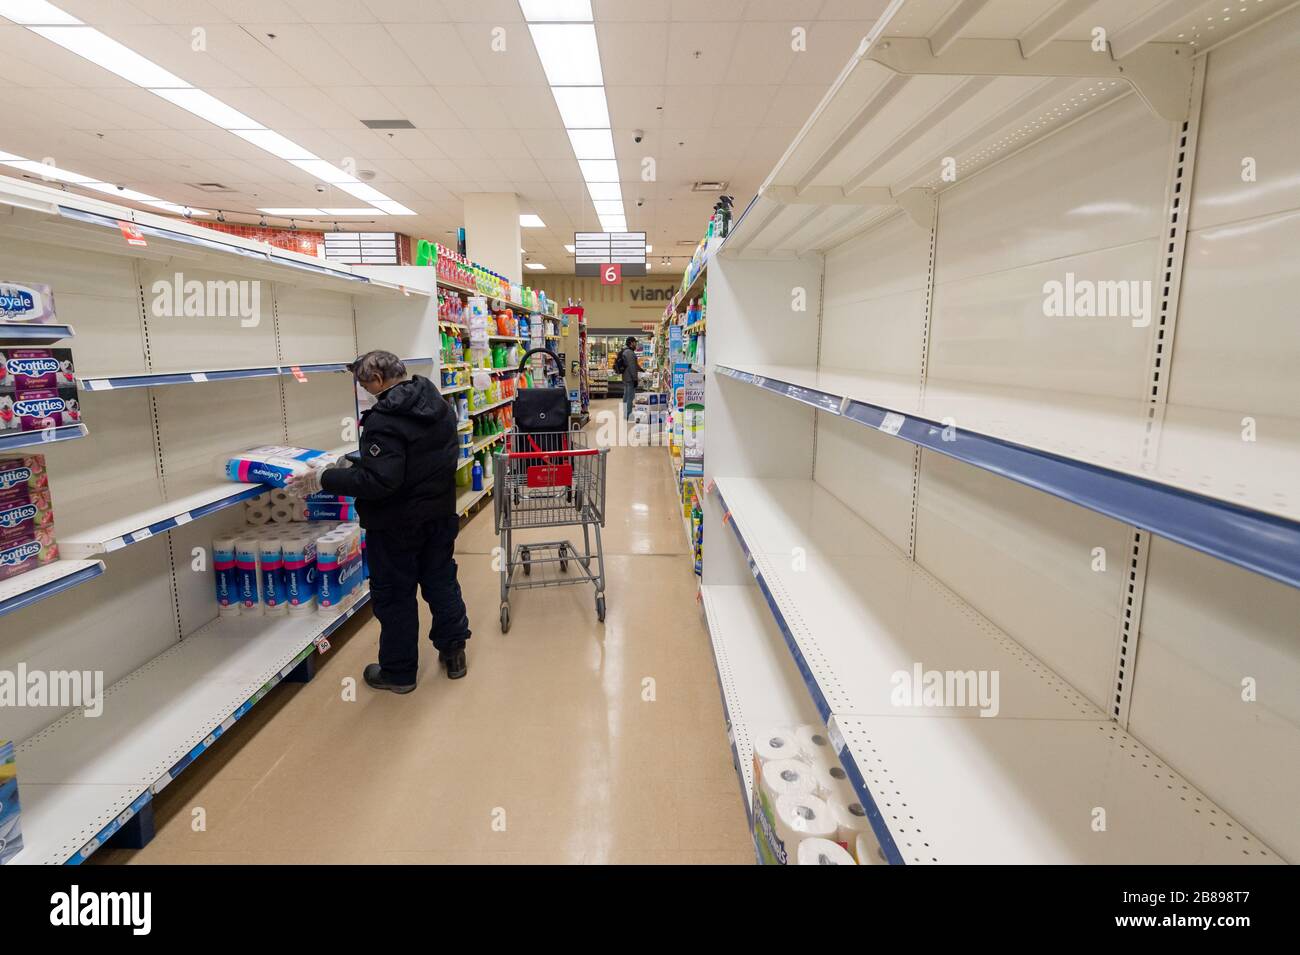 Montreal, CA - 20 de marzo de 2020: Estantes vacíos de papel higiénico en un supermercado. Escasez de suministros debido al pánico del Coronavirus. Foto de stock